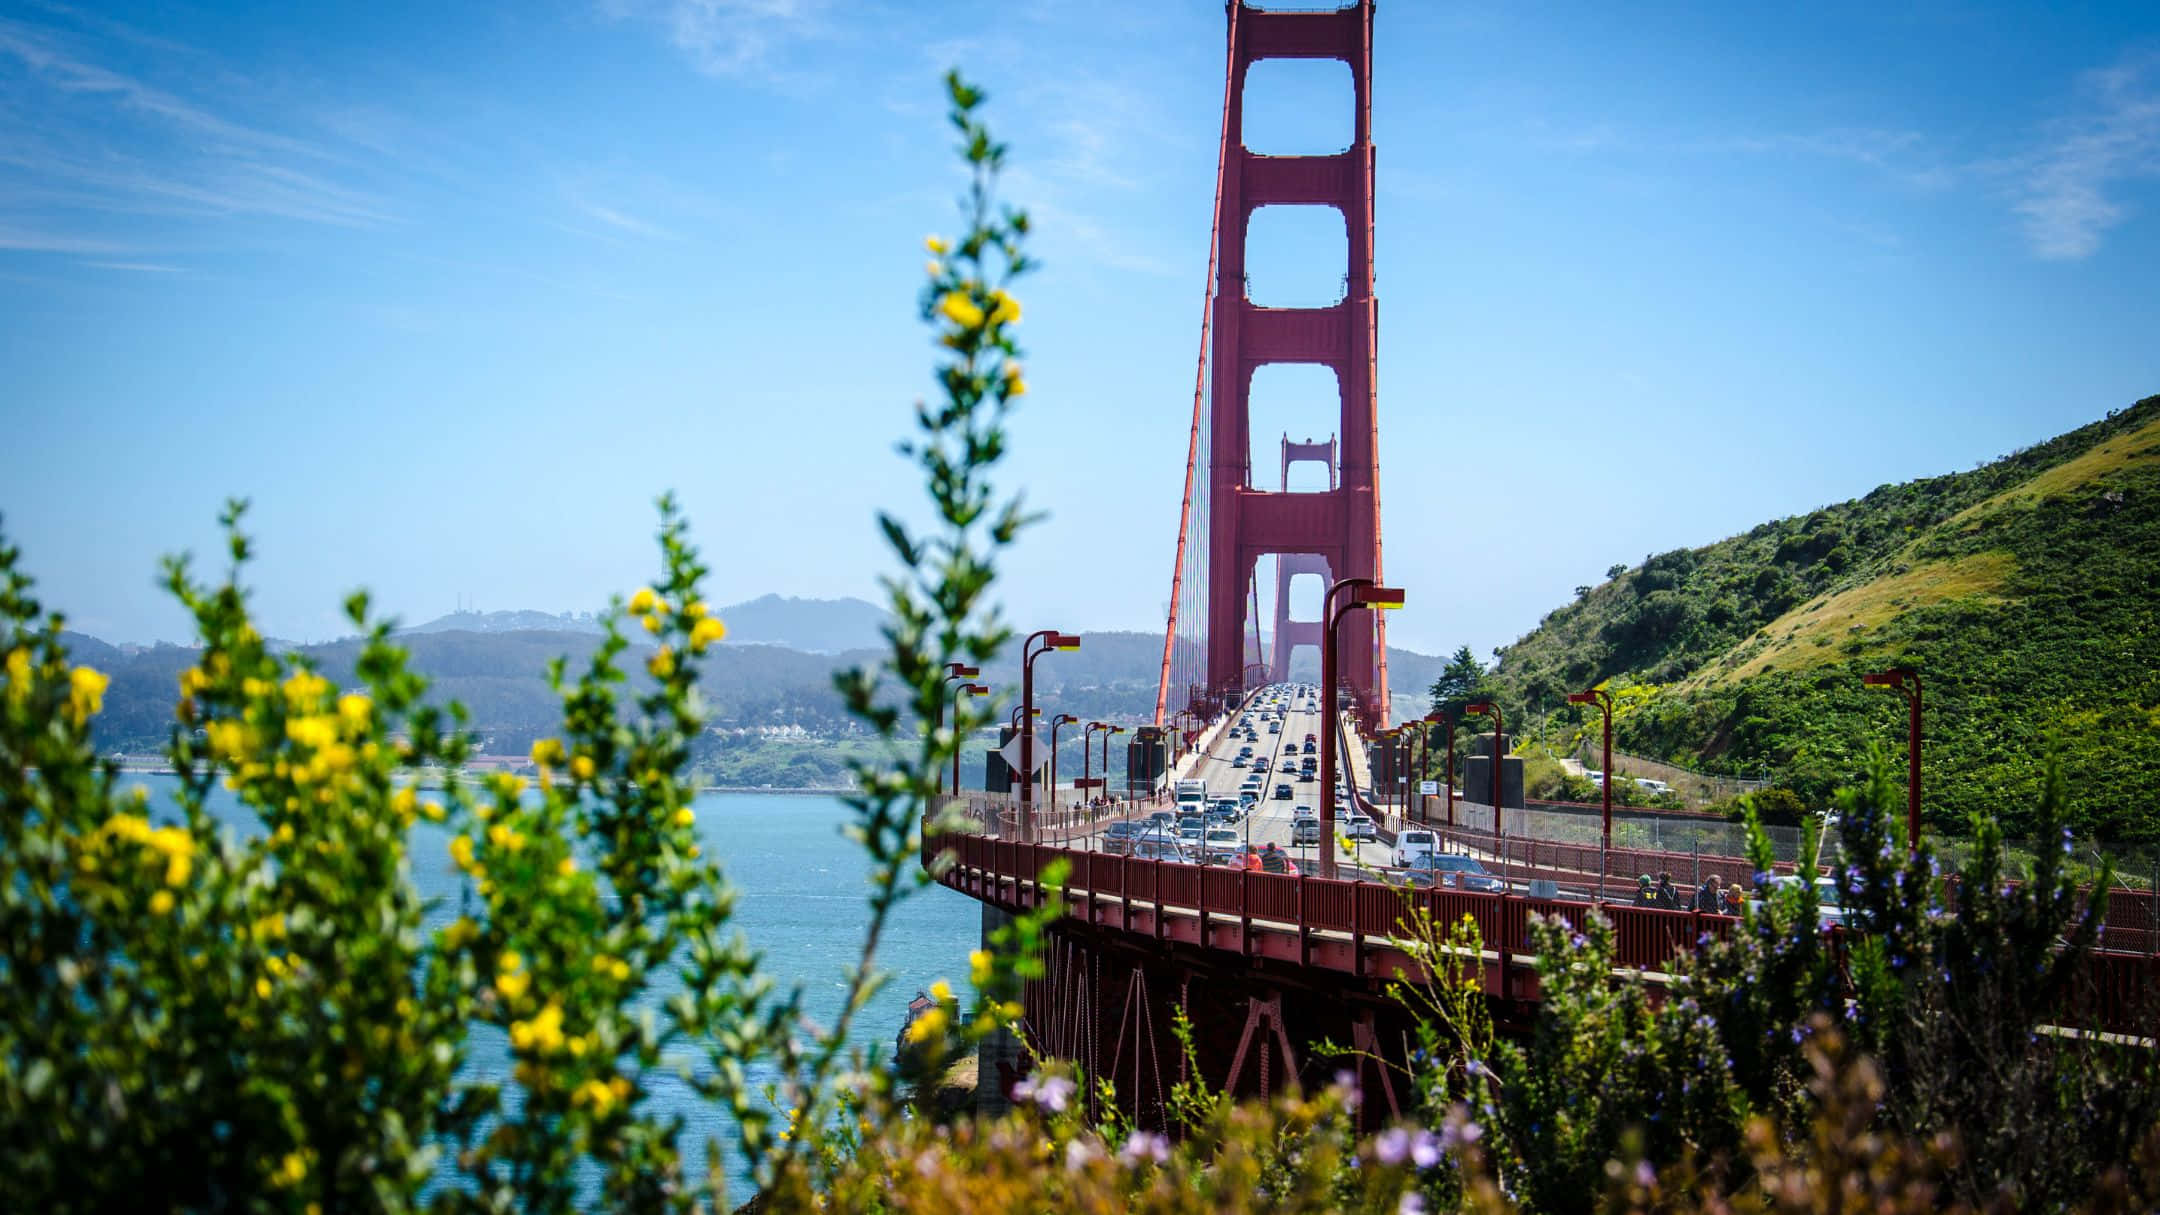 "Spectacular Panorama of San Francisco"